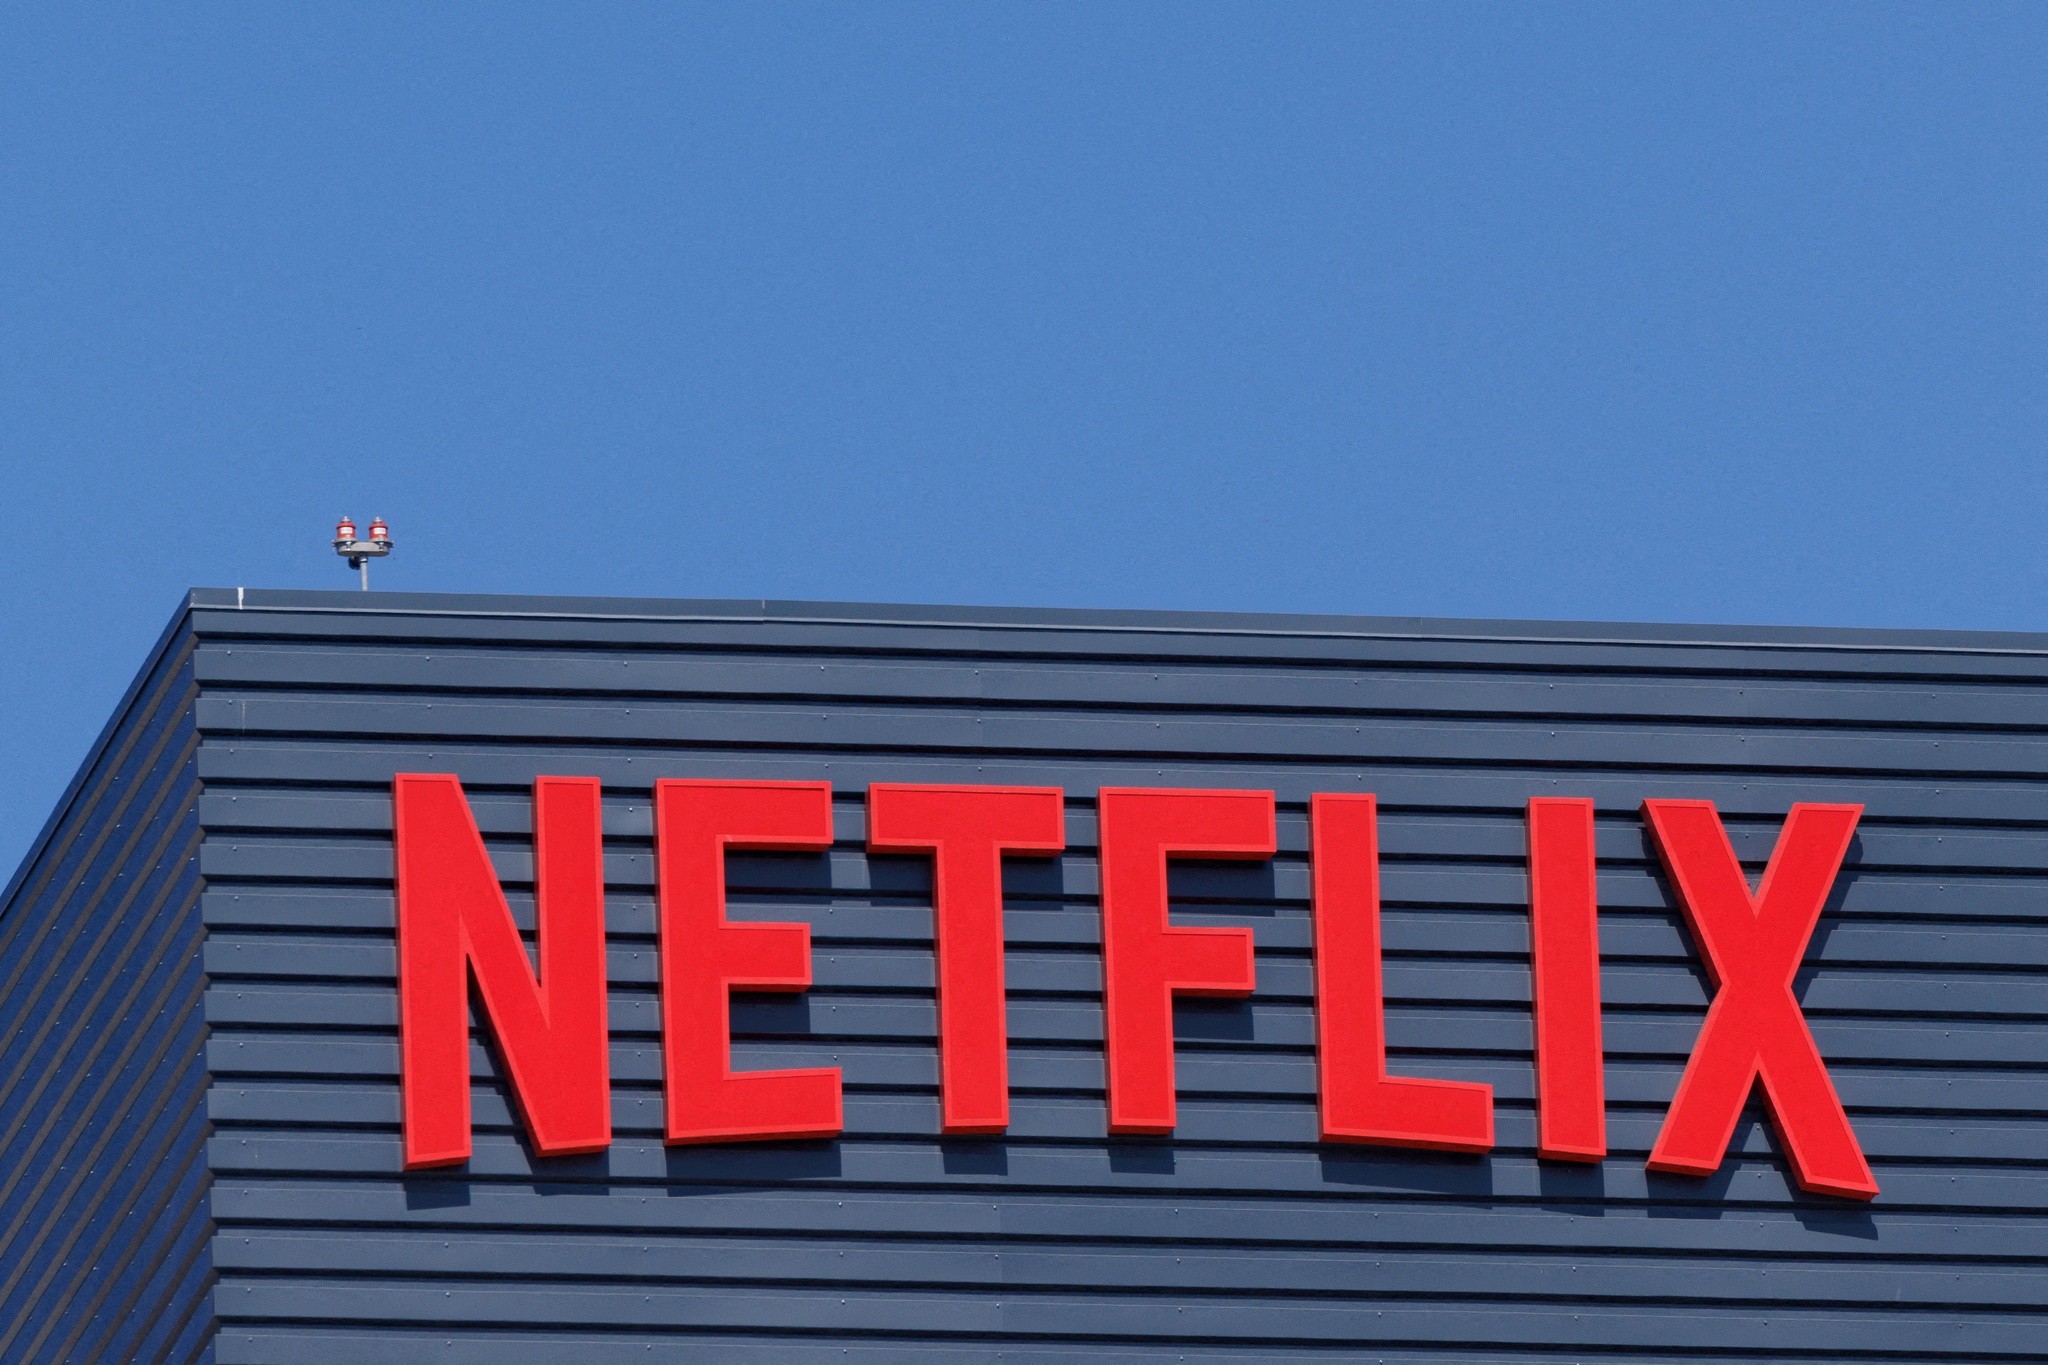 Aberto até de Madrugada: Netflix dá acesso gratuito a filmes e séries